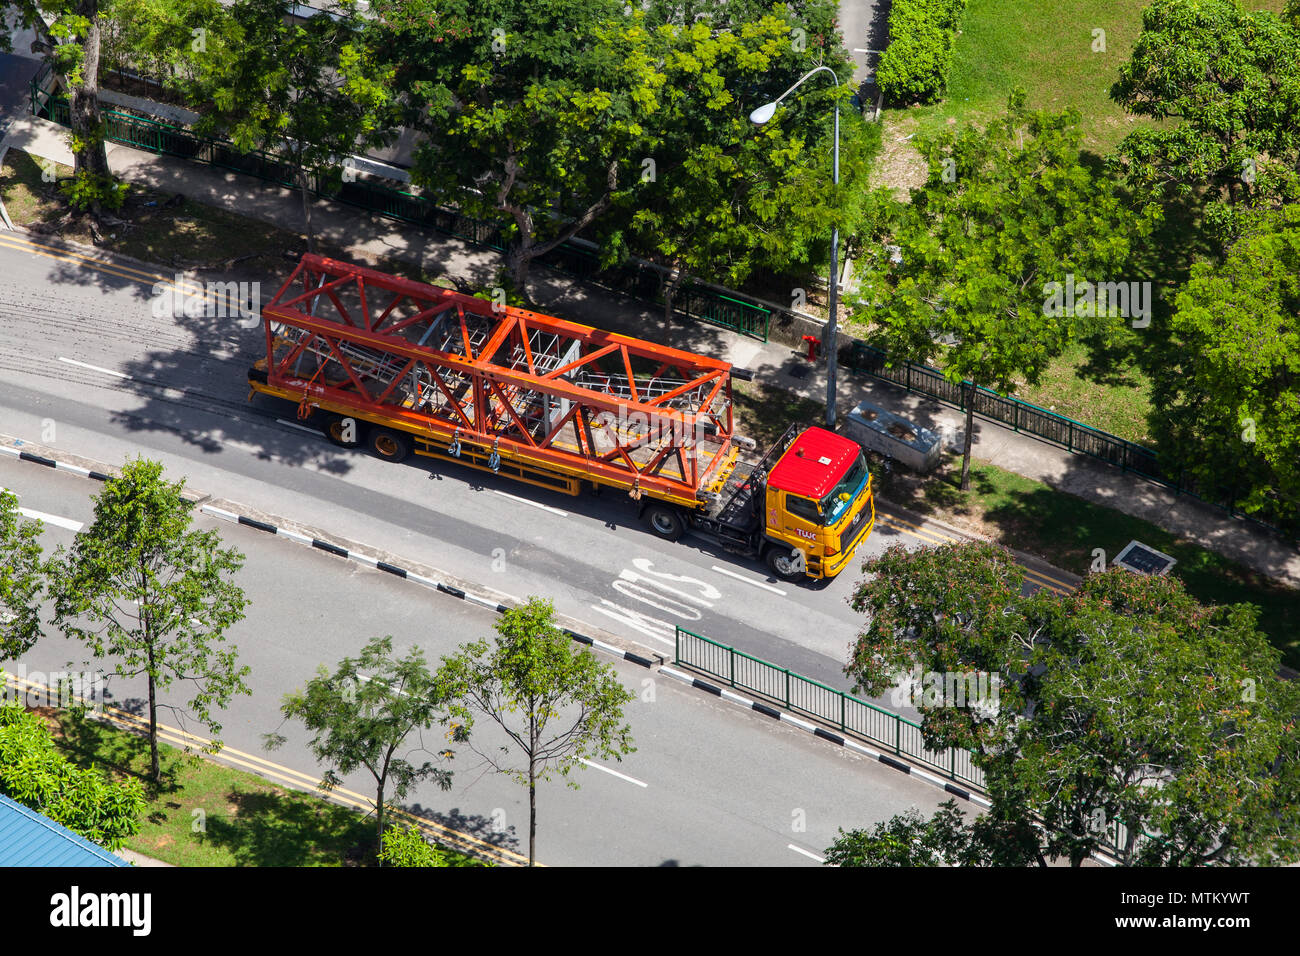 Une remorque lourde véhicule transporte une grue a tour sur la route à partir d'un point de vue aérienne. Banque D'Images